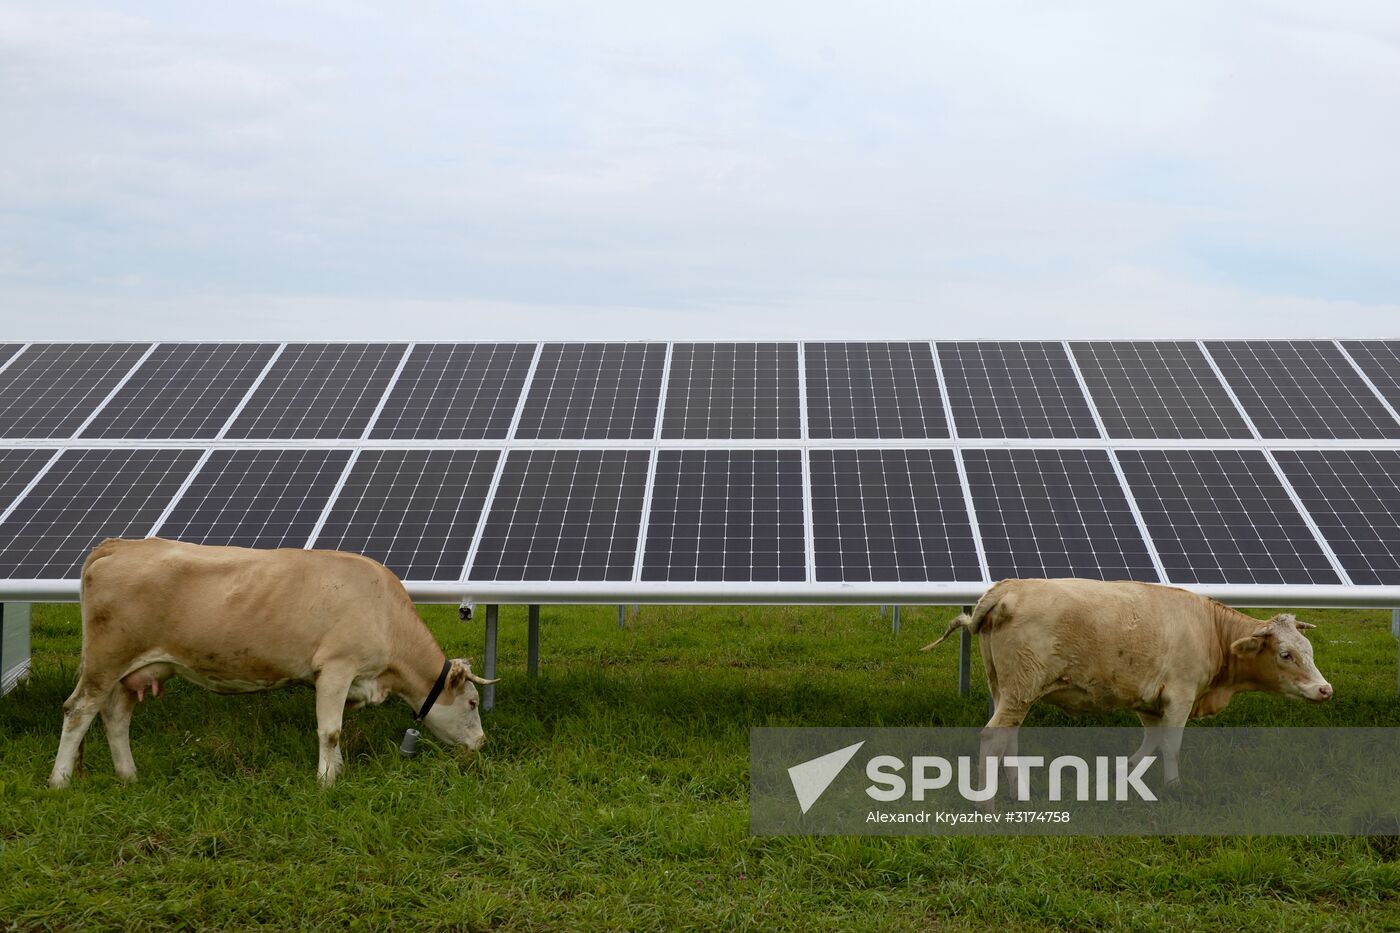 Maima Solar Power Plant in Altai Republic